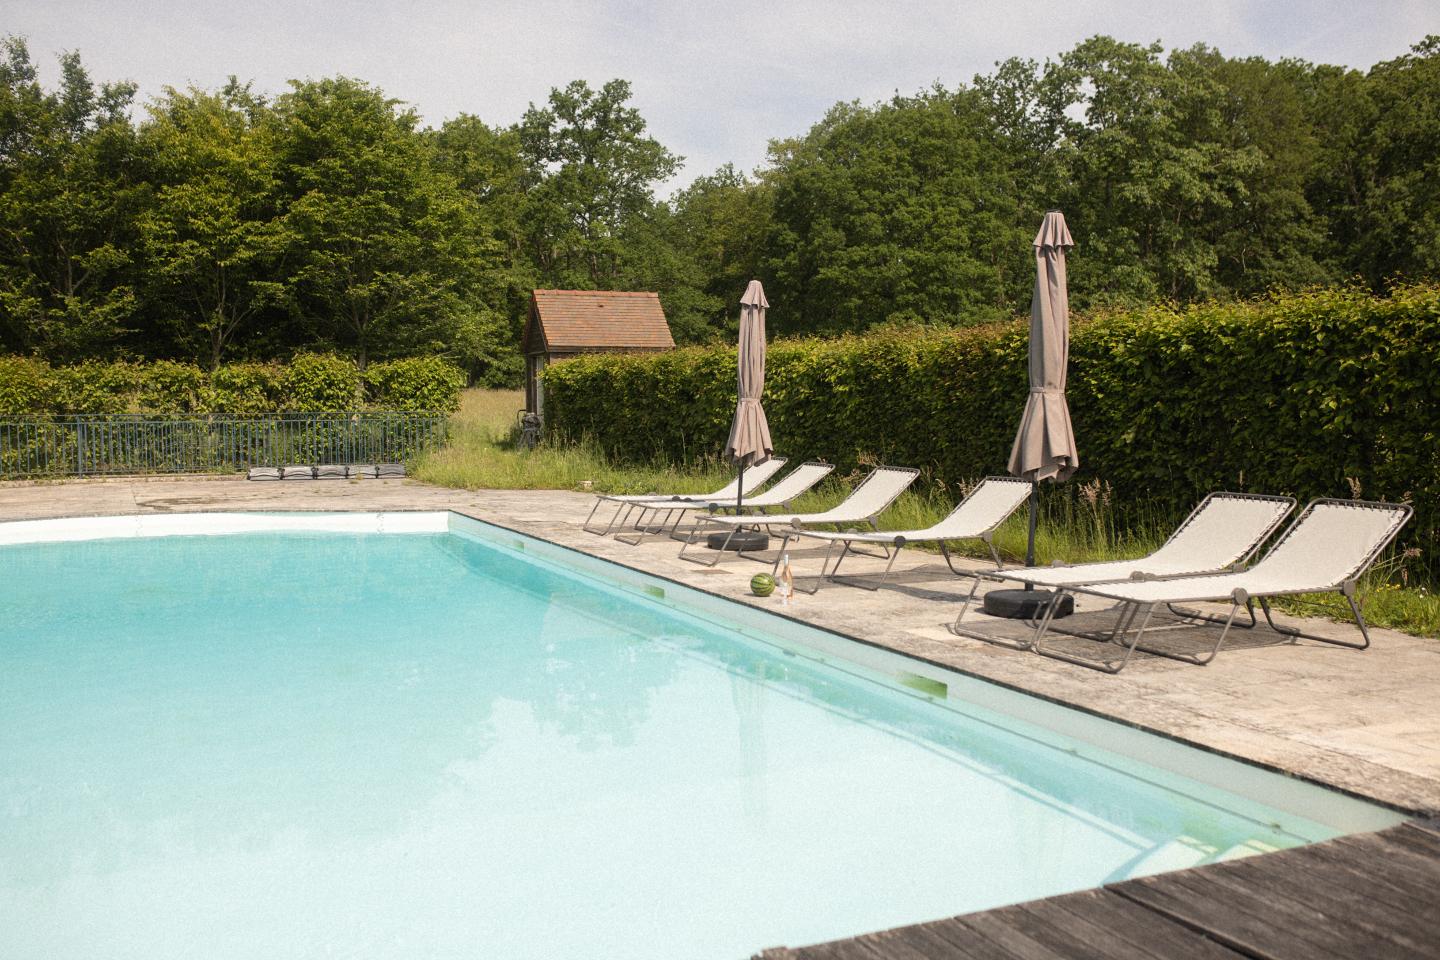 Hôte GreenGo: Location maison 15 personnes avec piscine à 50 min de Paris - Image 41